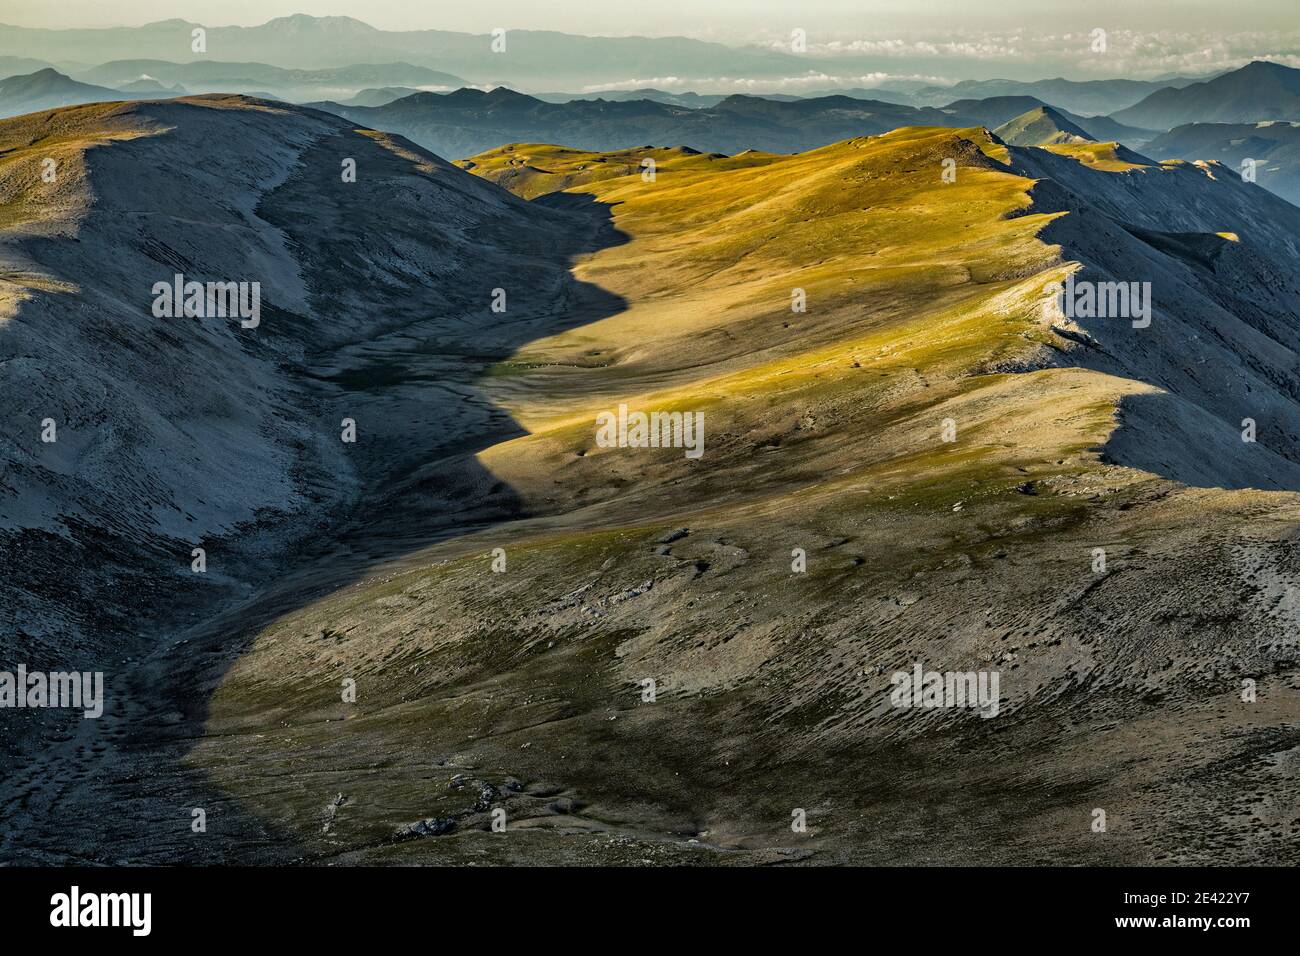 Valle della 'Femmina Mortaa' dalla cima del Monte Amaro alla prima luce dell'alba. Parco Nazionale della Maiella, Abruzzo Italia Foto Stock